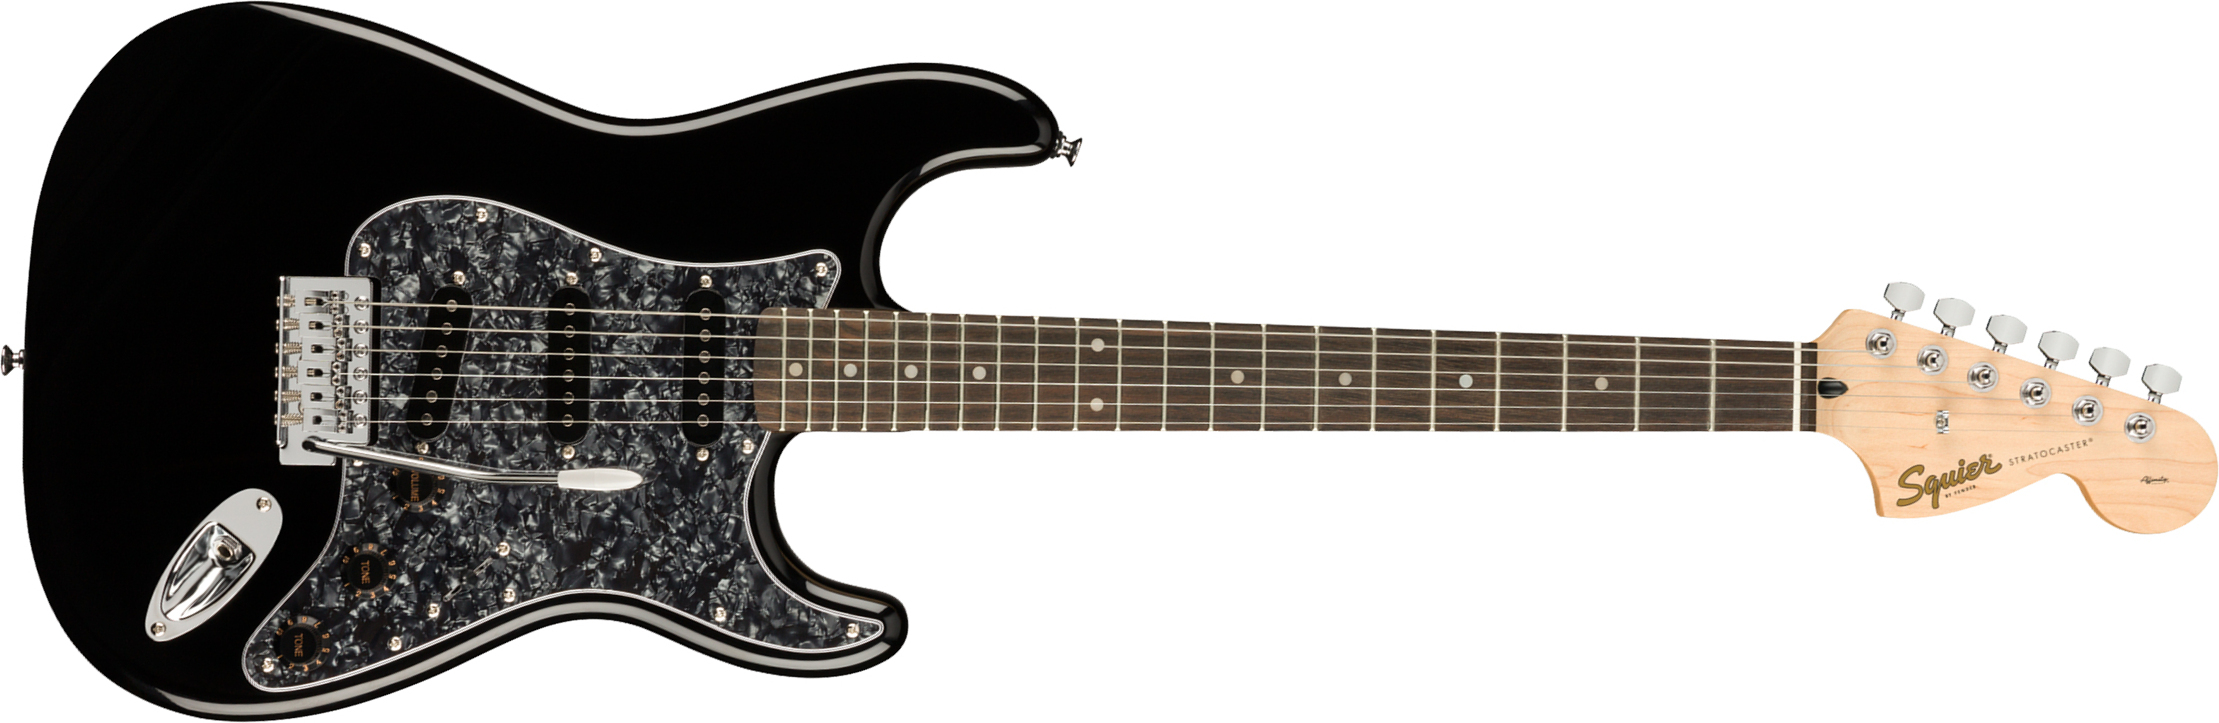 Squier Strat Affinity Black Pearl Pickguard Fsr Ltd Sss Trem Lau - Black - Guitarra eléctrica con forma de str. - Main picture